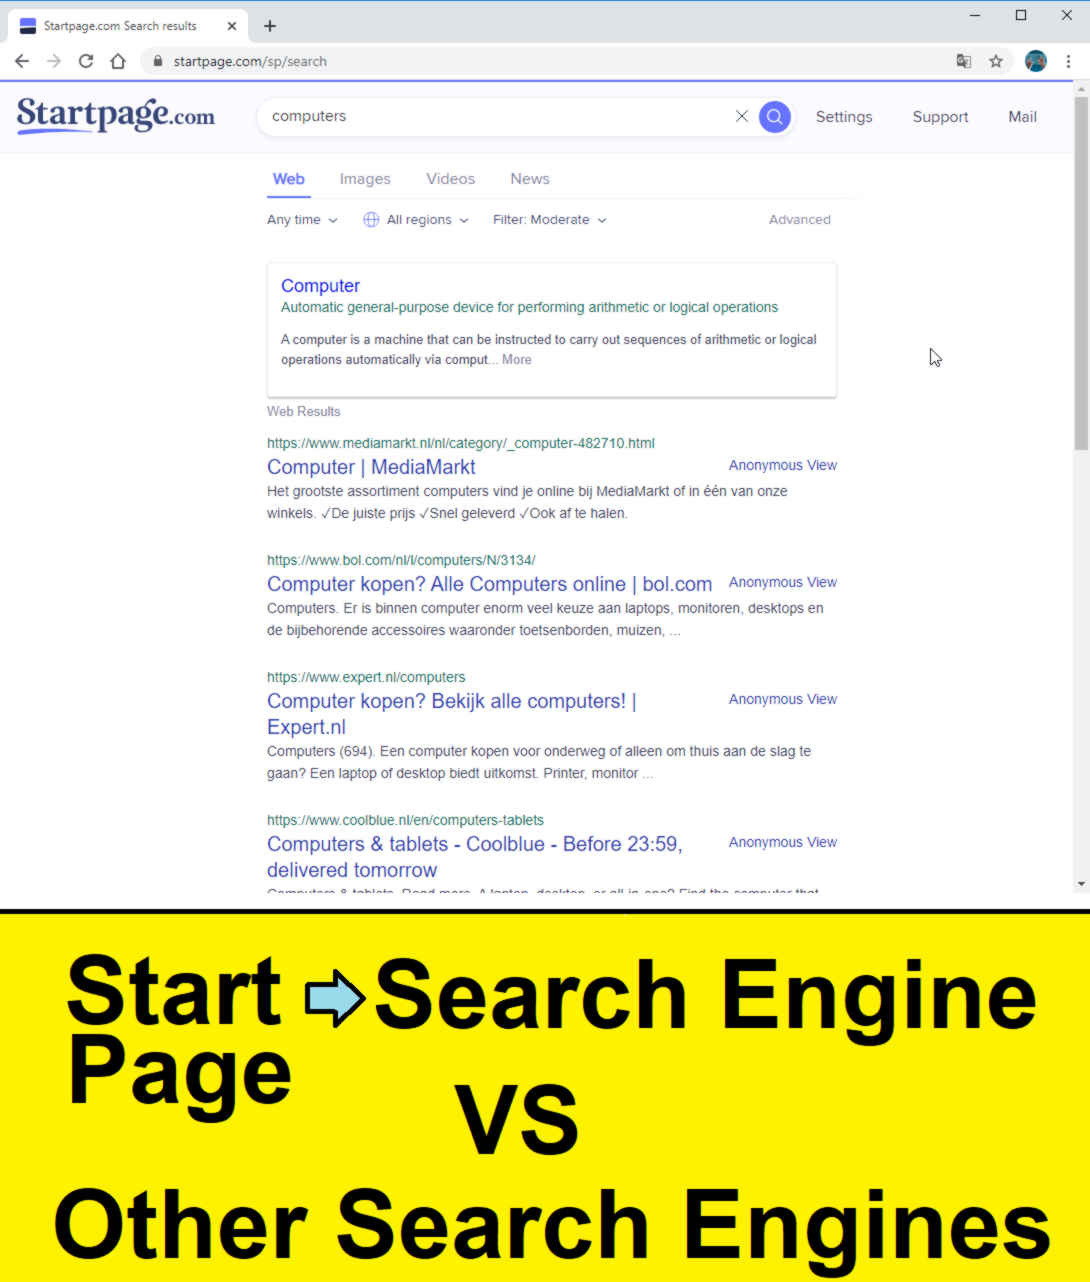 compare startpage search engine